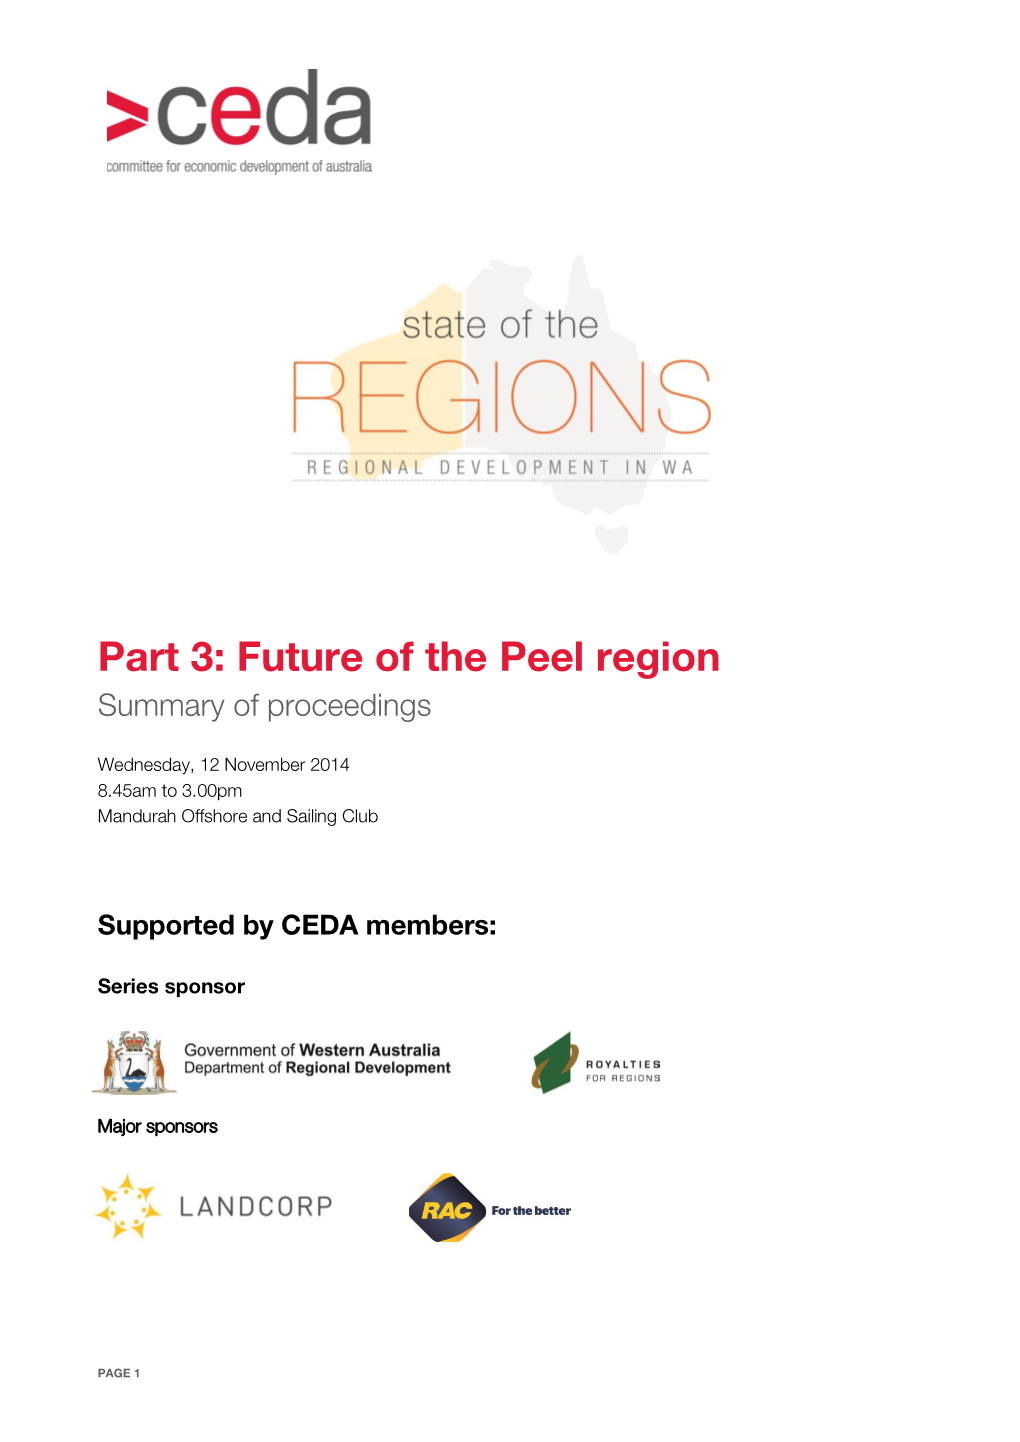 Future of the Peel Region Summary of Proceedings